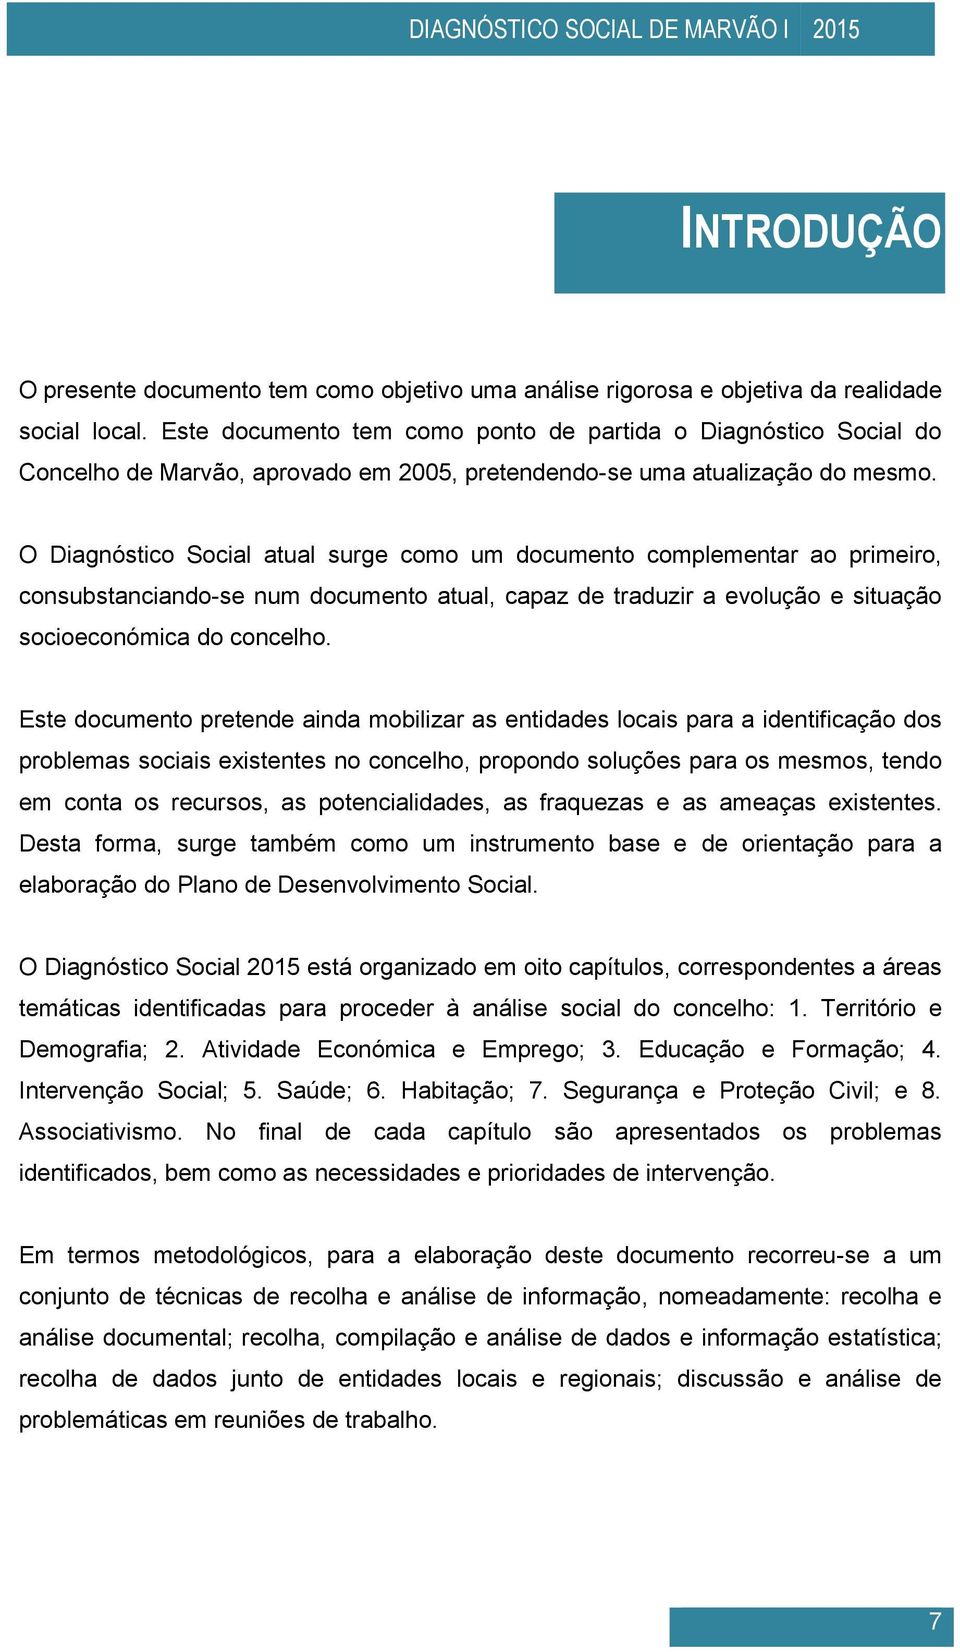 O Diagnóstico Social atual surge como um documento complementar ao primeiro, consubstanciando-se num documento atual, capaz de traduzir a evolução e situação socioeconómica do concelho.